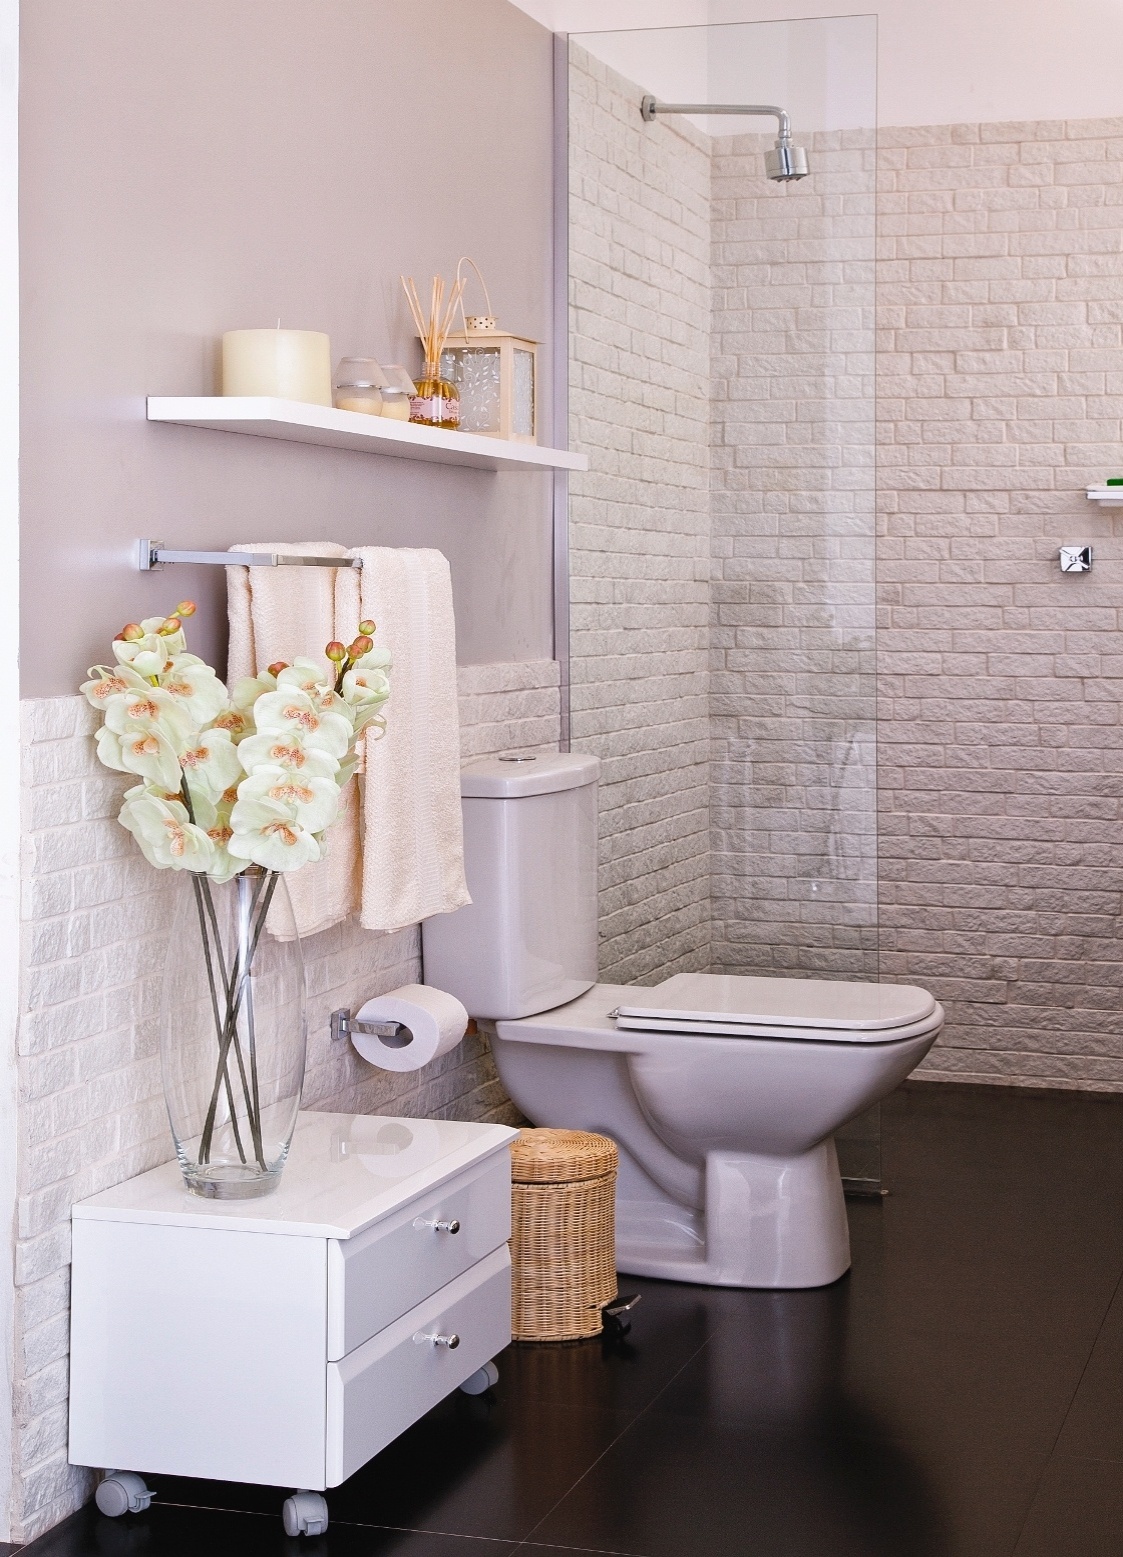 Banheiros pequenos: dicas de decoração para quem tem pouco espaço 